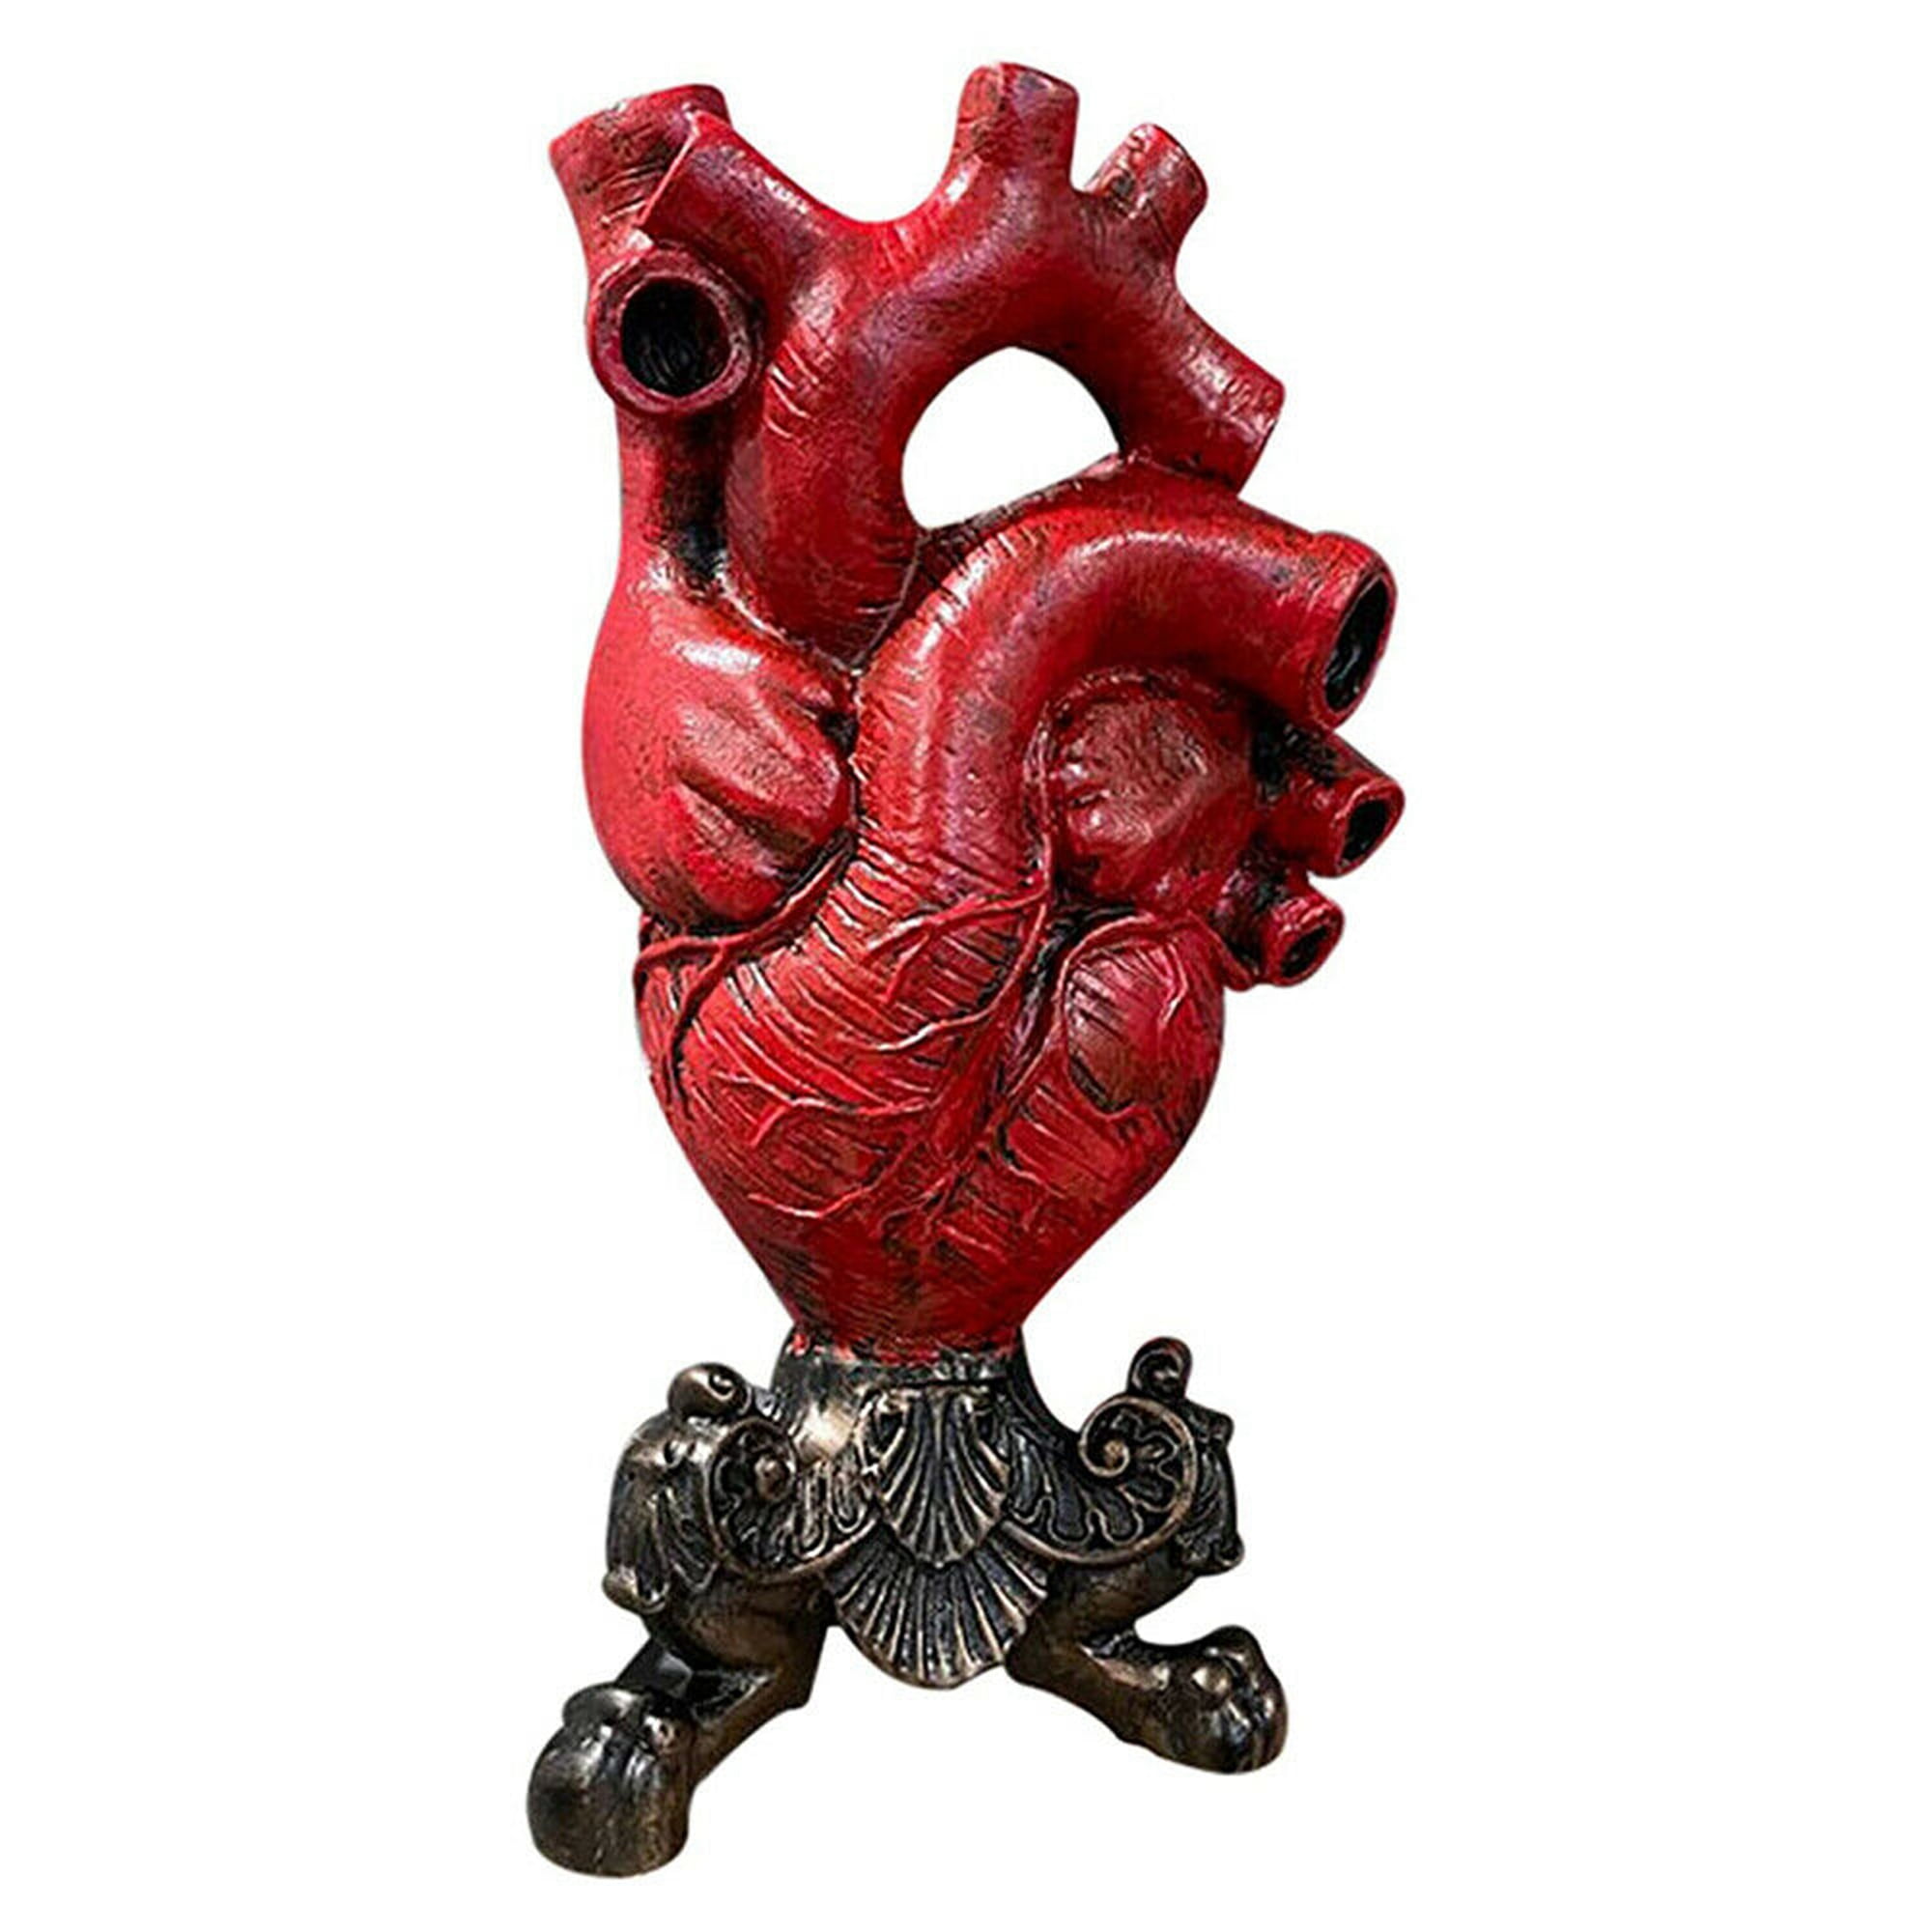 Flying heart ceramic vase